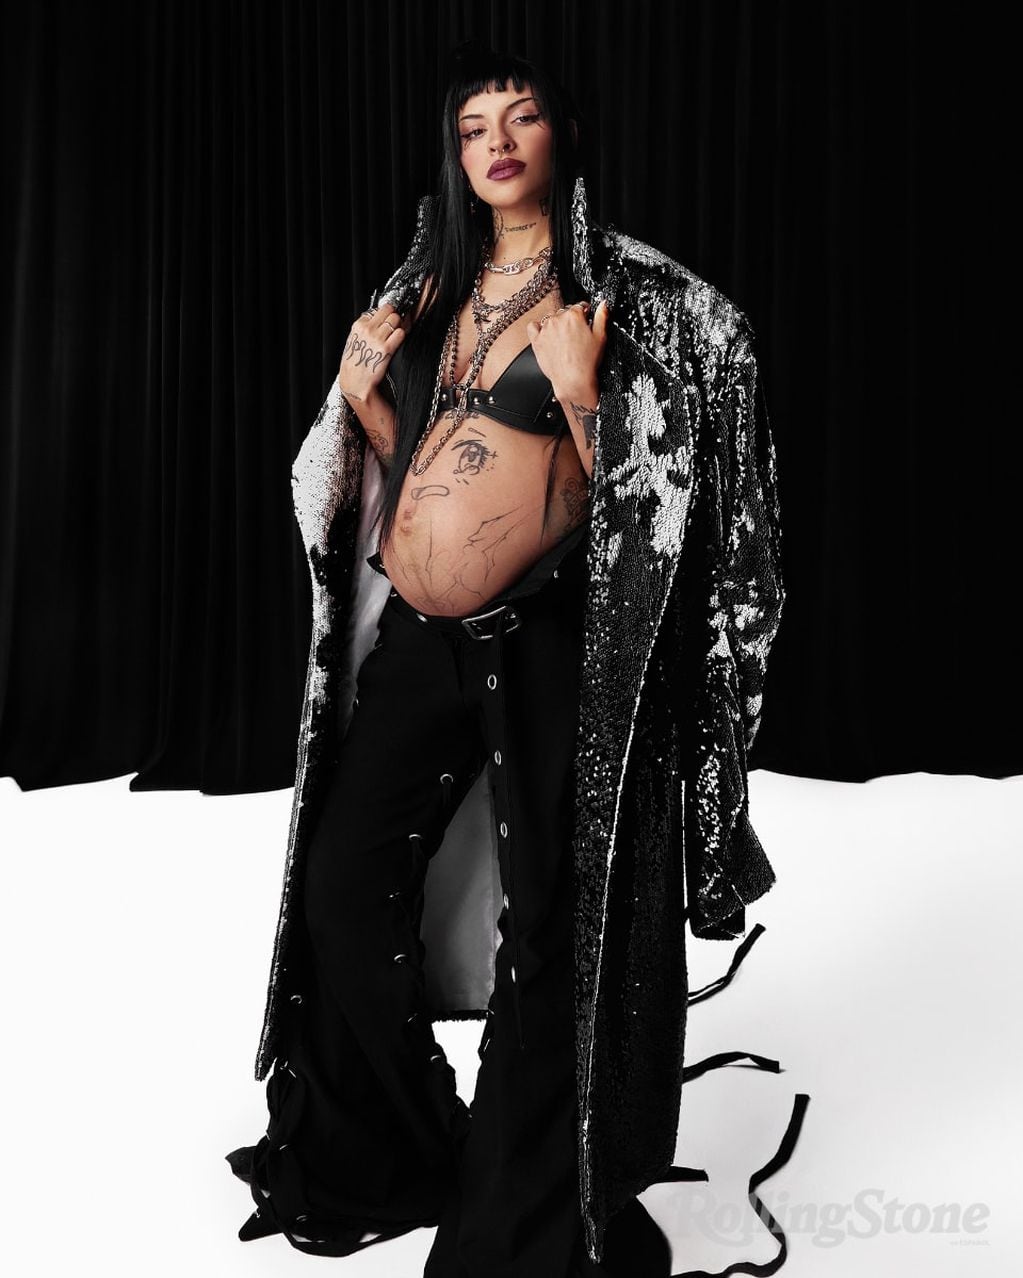 Cazzu posó embarazada para la portada de Rolling Stone y habló acerca de la maternidad